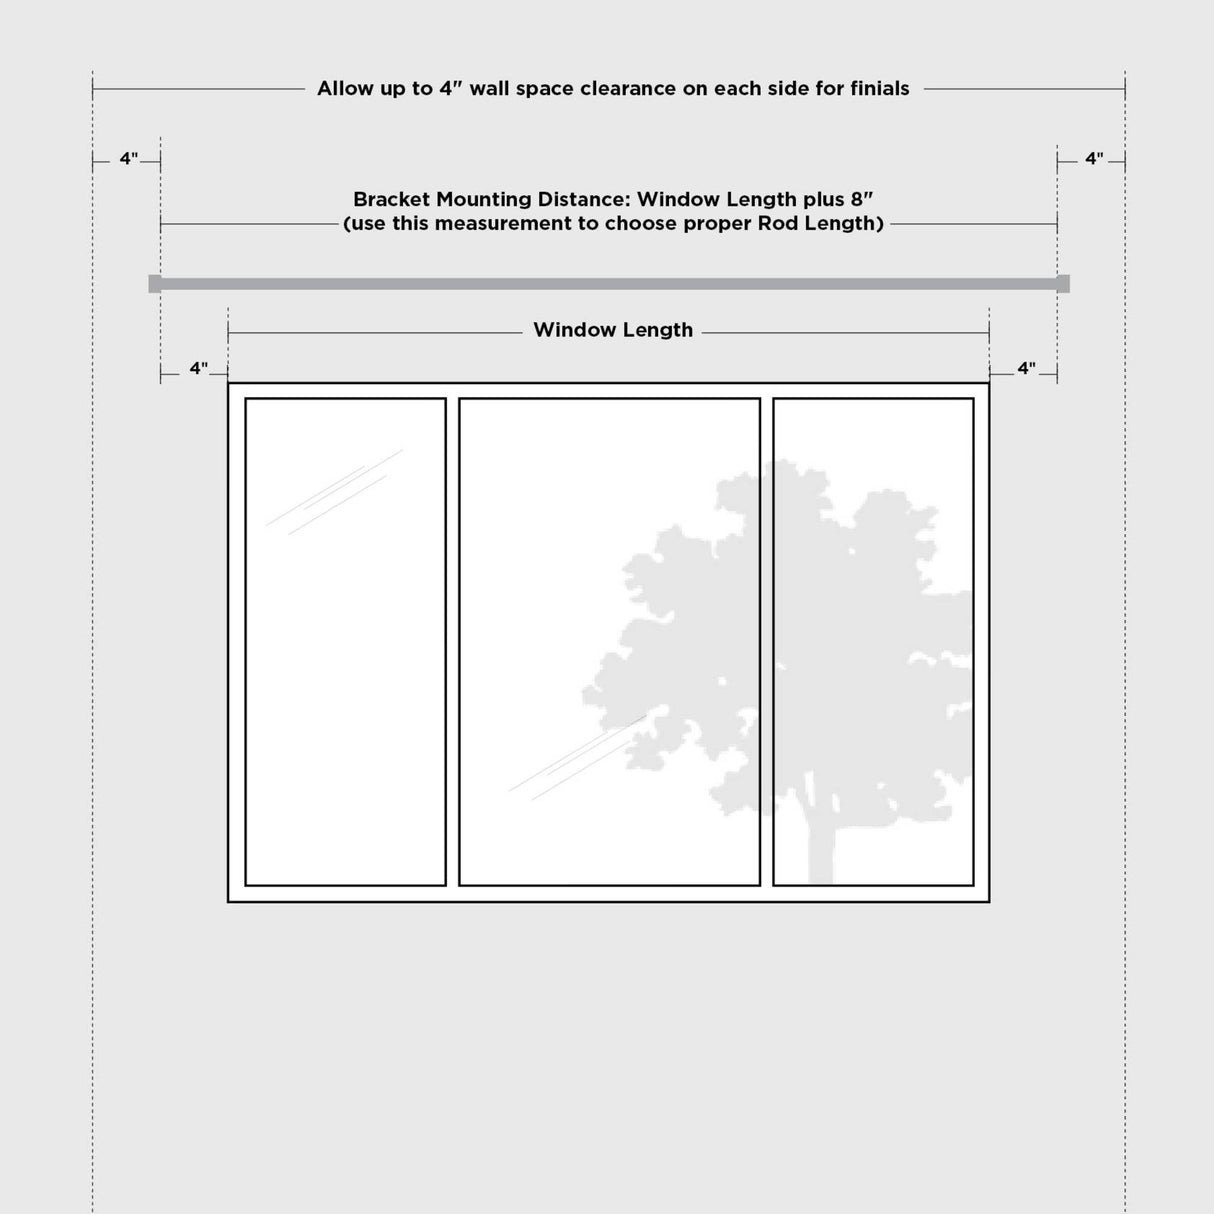 Single Curtain Rods | color: Eco-Friendly Matte-Black | size: 36-72" (91-183 cm) | diameter: 1" (2.5 cm)